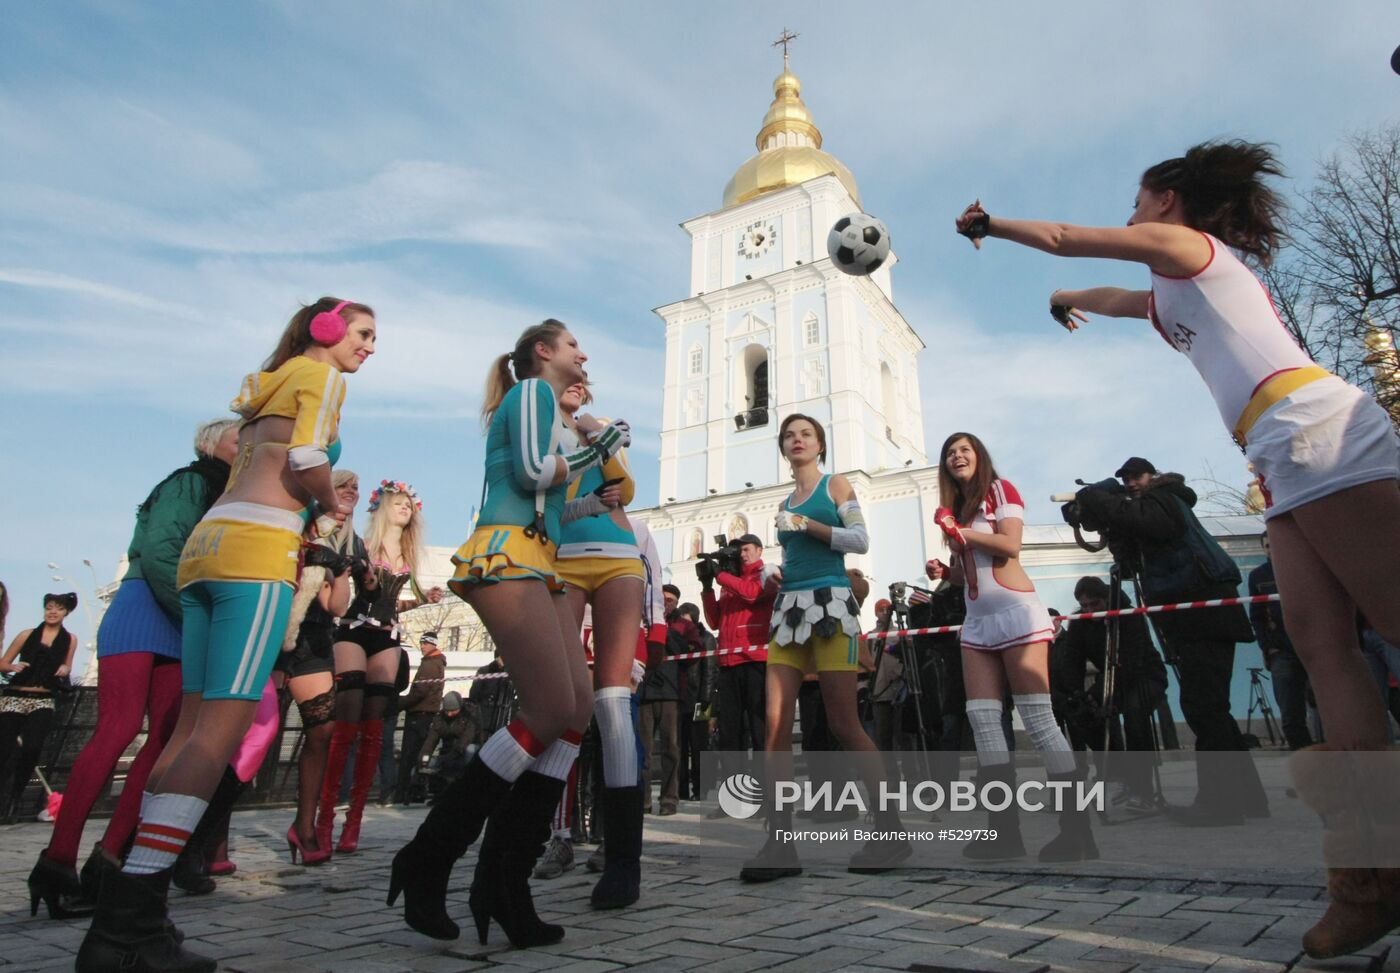 Акция движения FEMEN "Евро 2012 - без проституции!" в Киеве